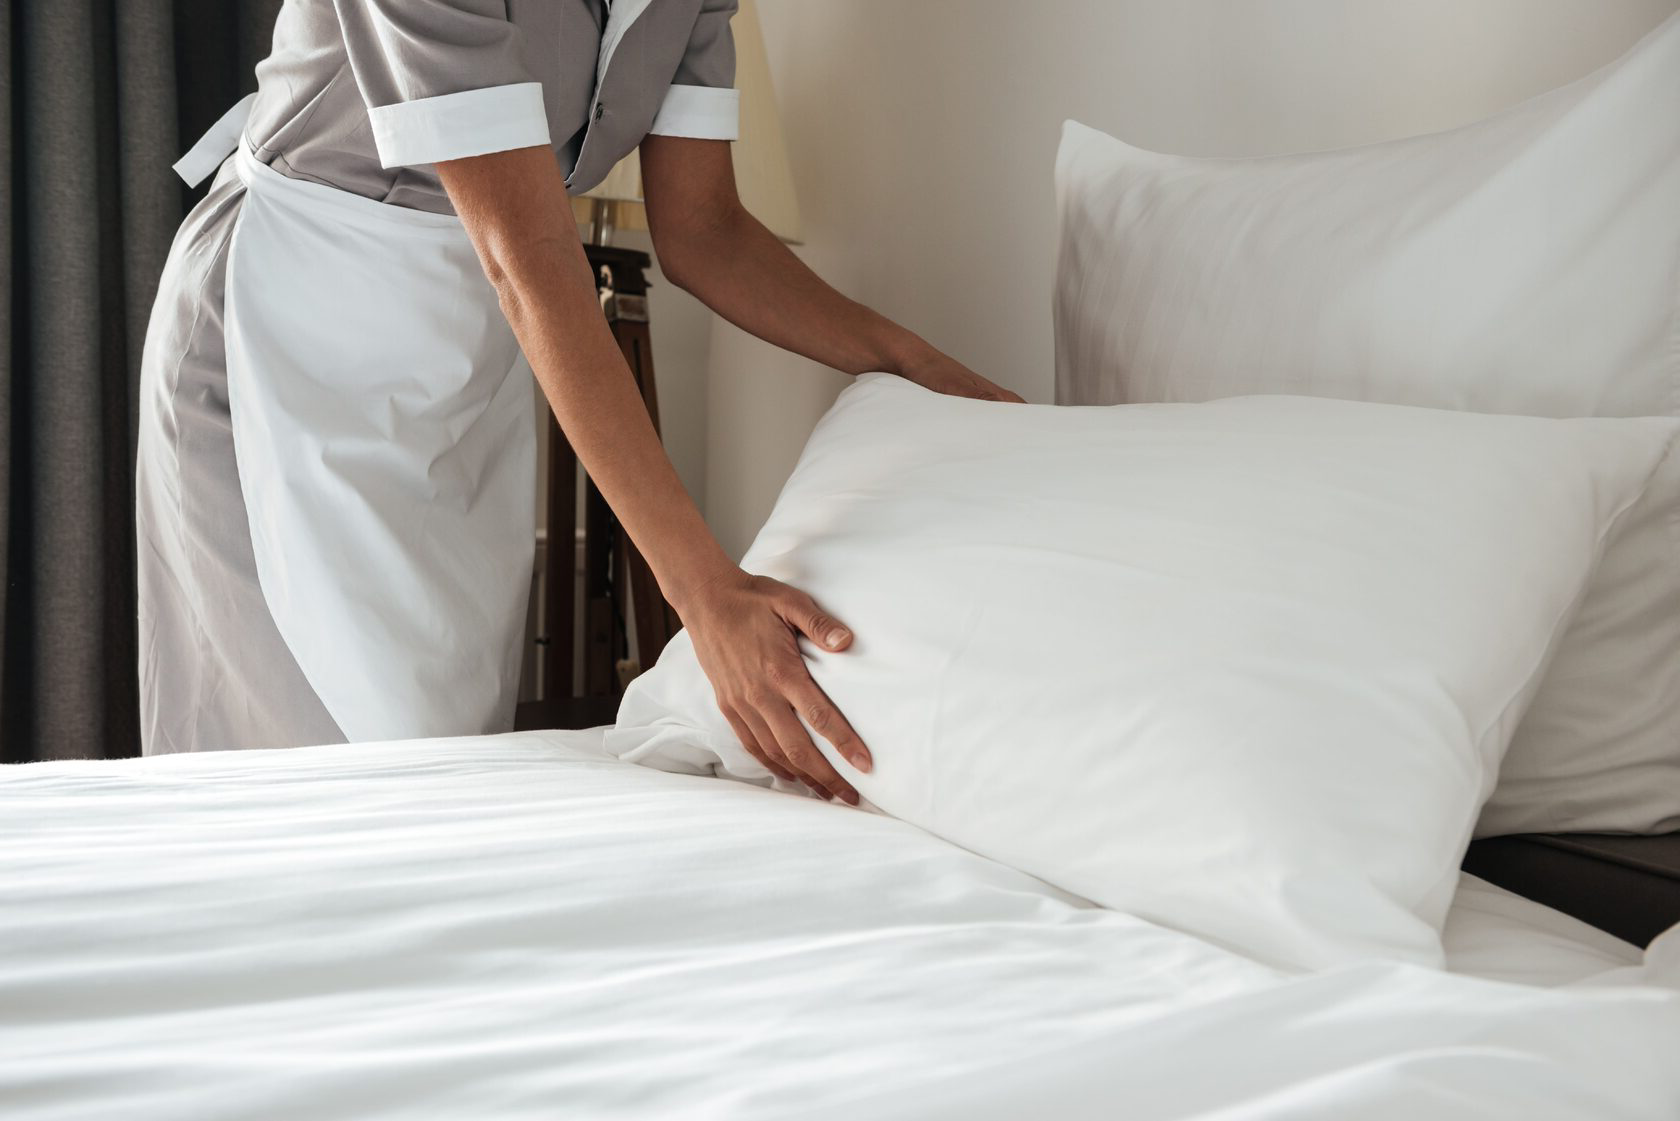 Изоляция в отеле. Хаускипинг Роом. Заправленная кровать в отеле. Застеленная кровать. Заправленная постель в гостинице.